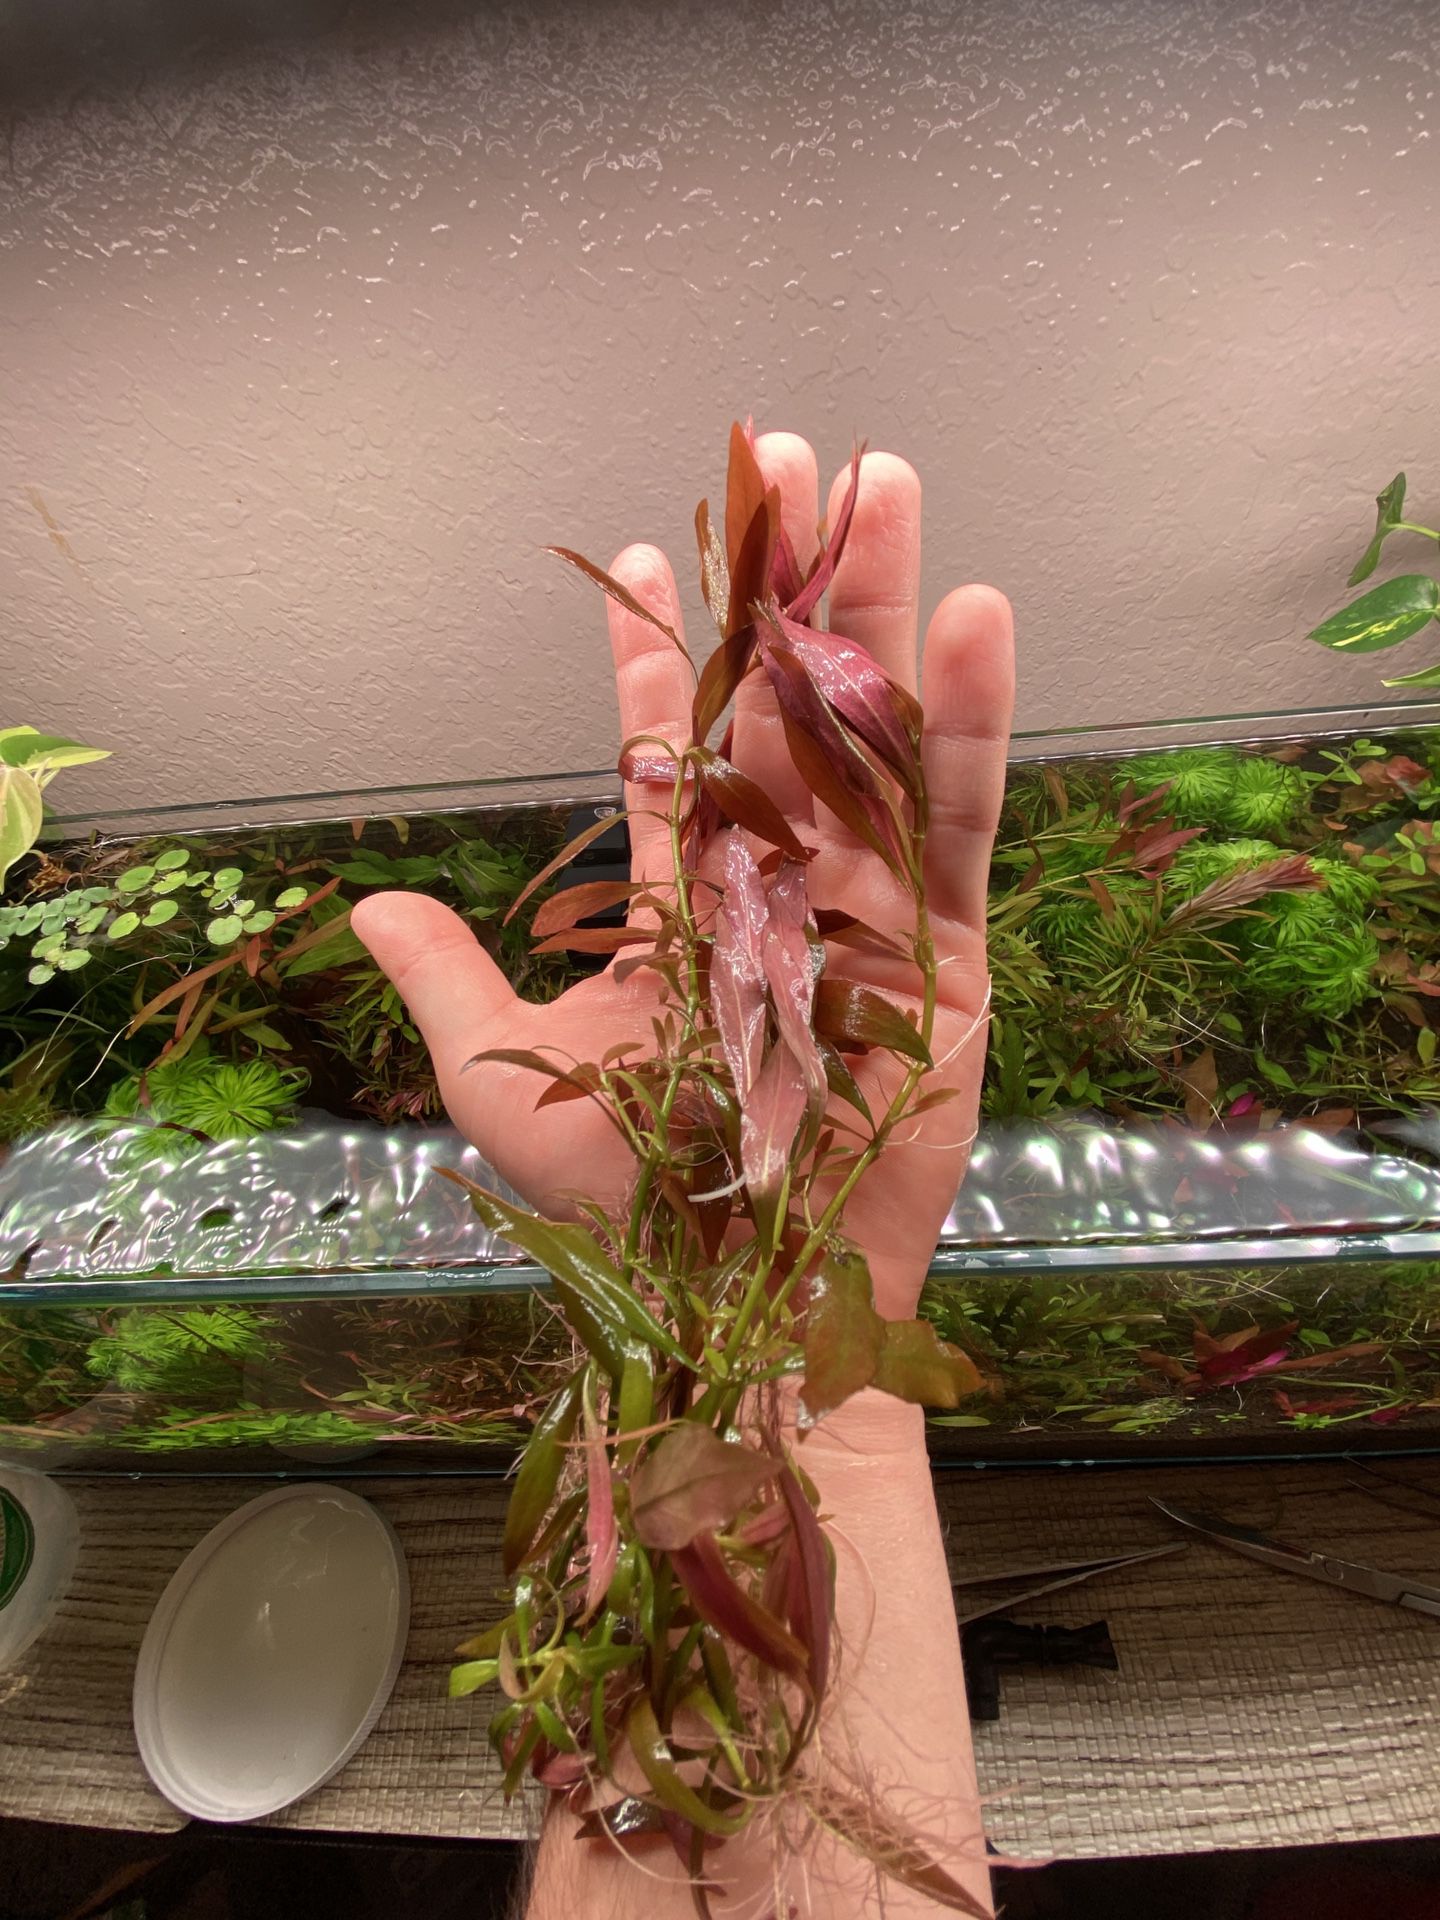 Aquarium/ Aquatic Plants For A Fish Tank